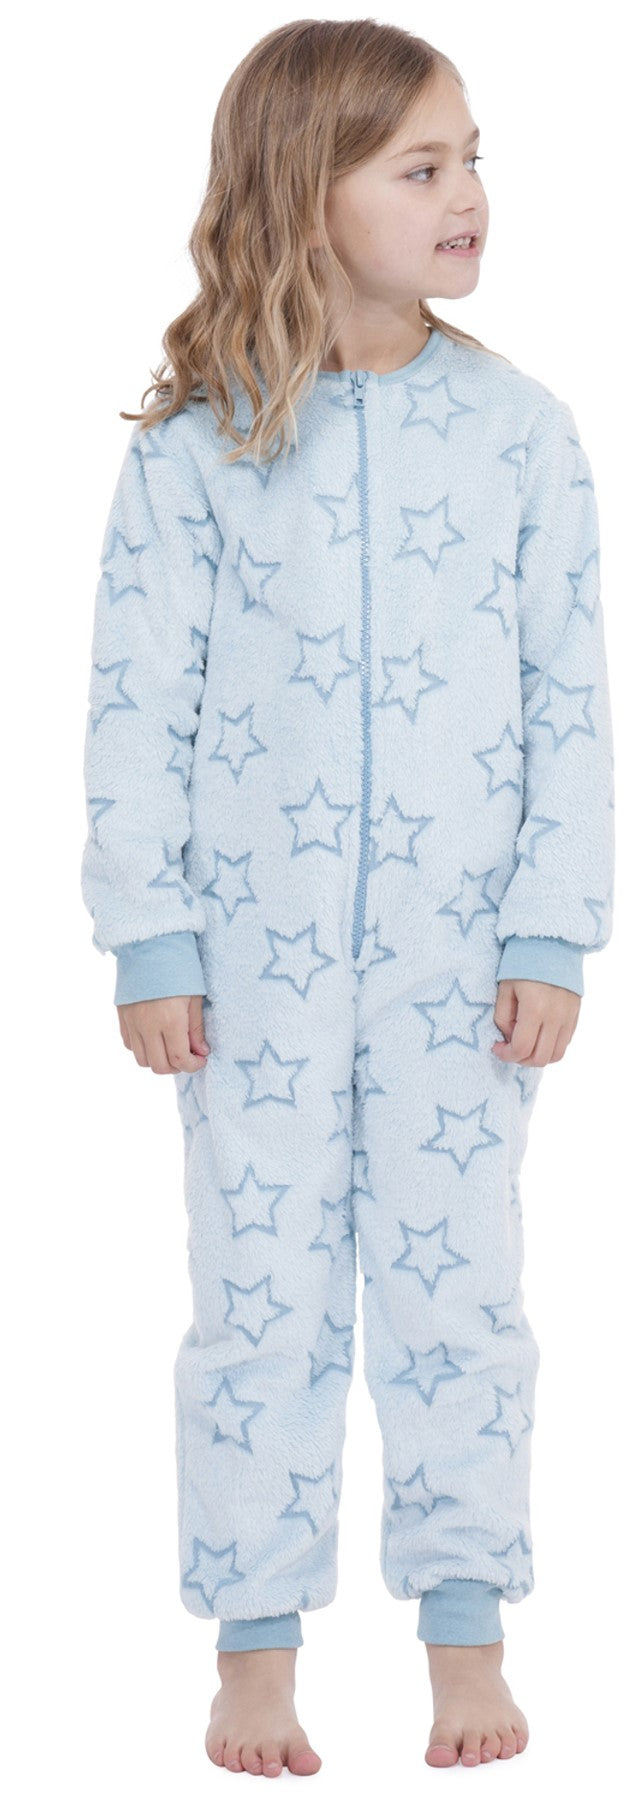 Girls Star Embossed Furry Feel All In One Sleepwear